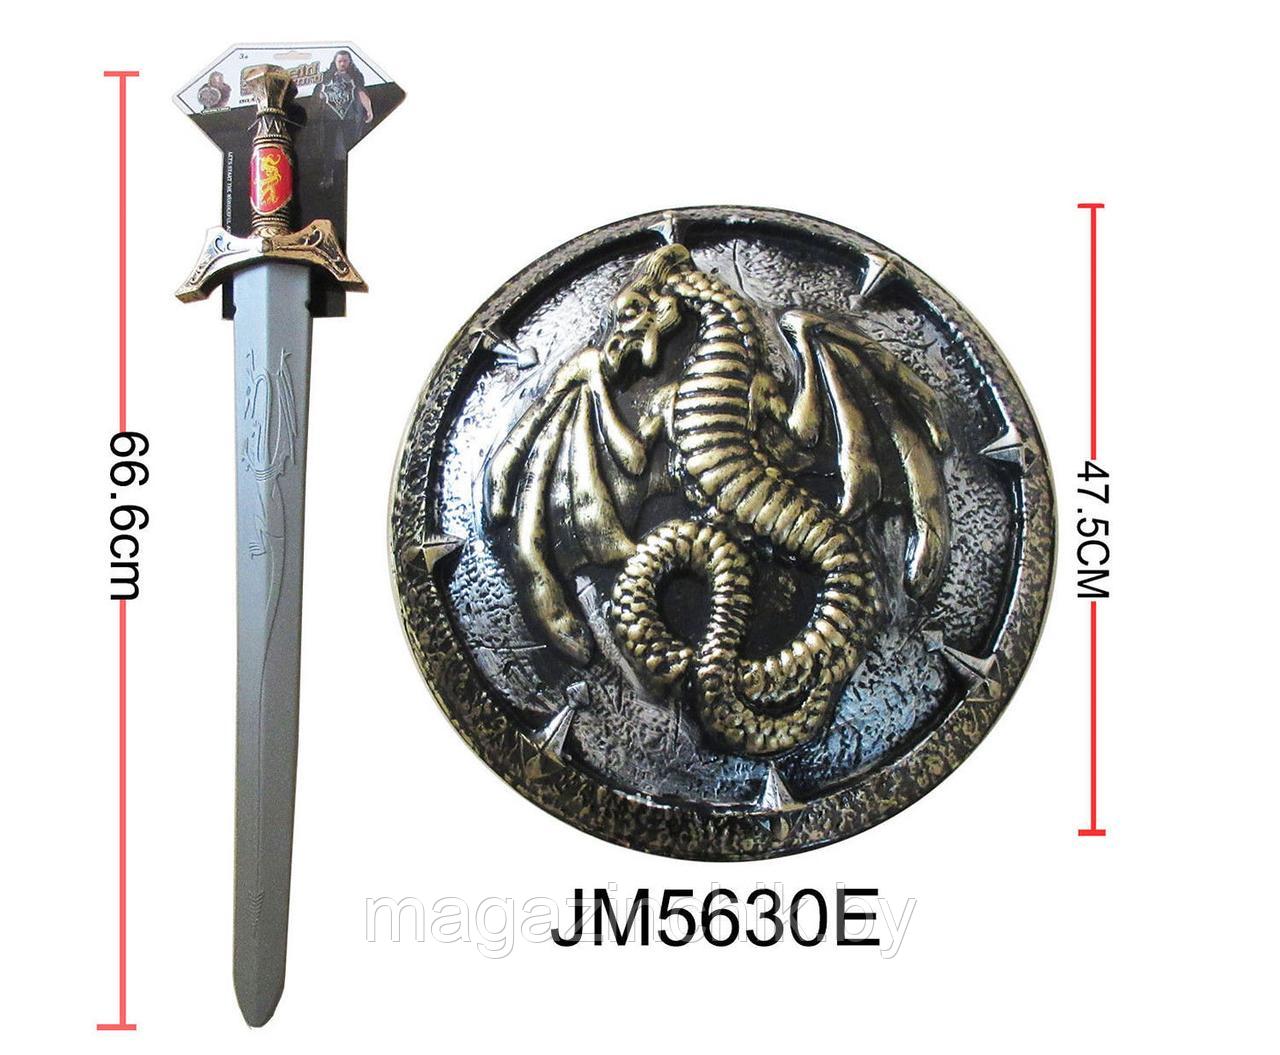 Щит и меч, JM5630E, для карнавала, на Хэллоуин, для косплея